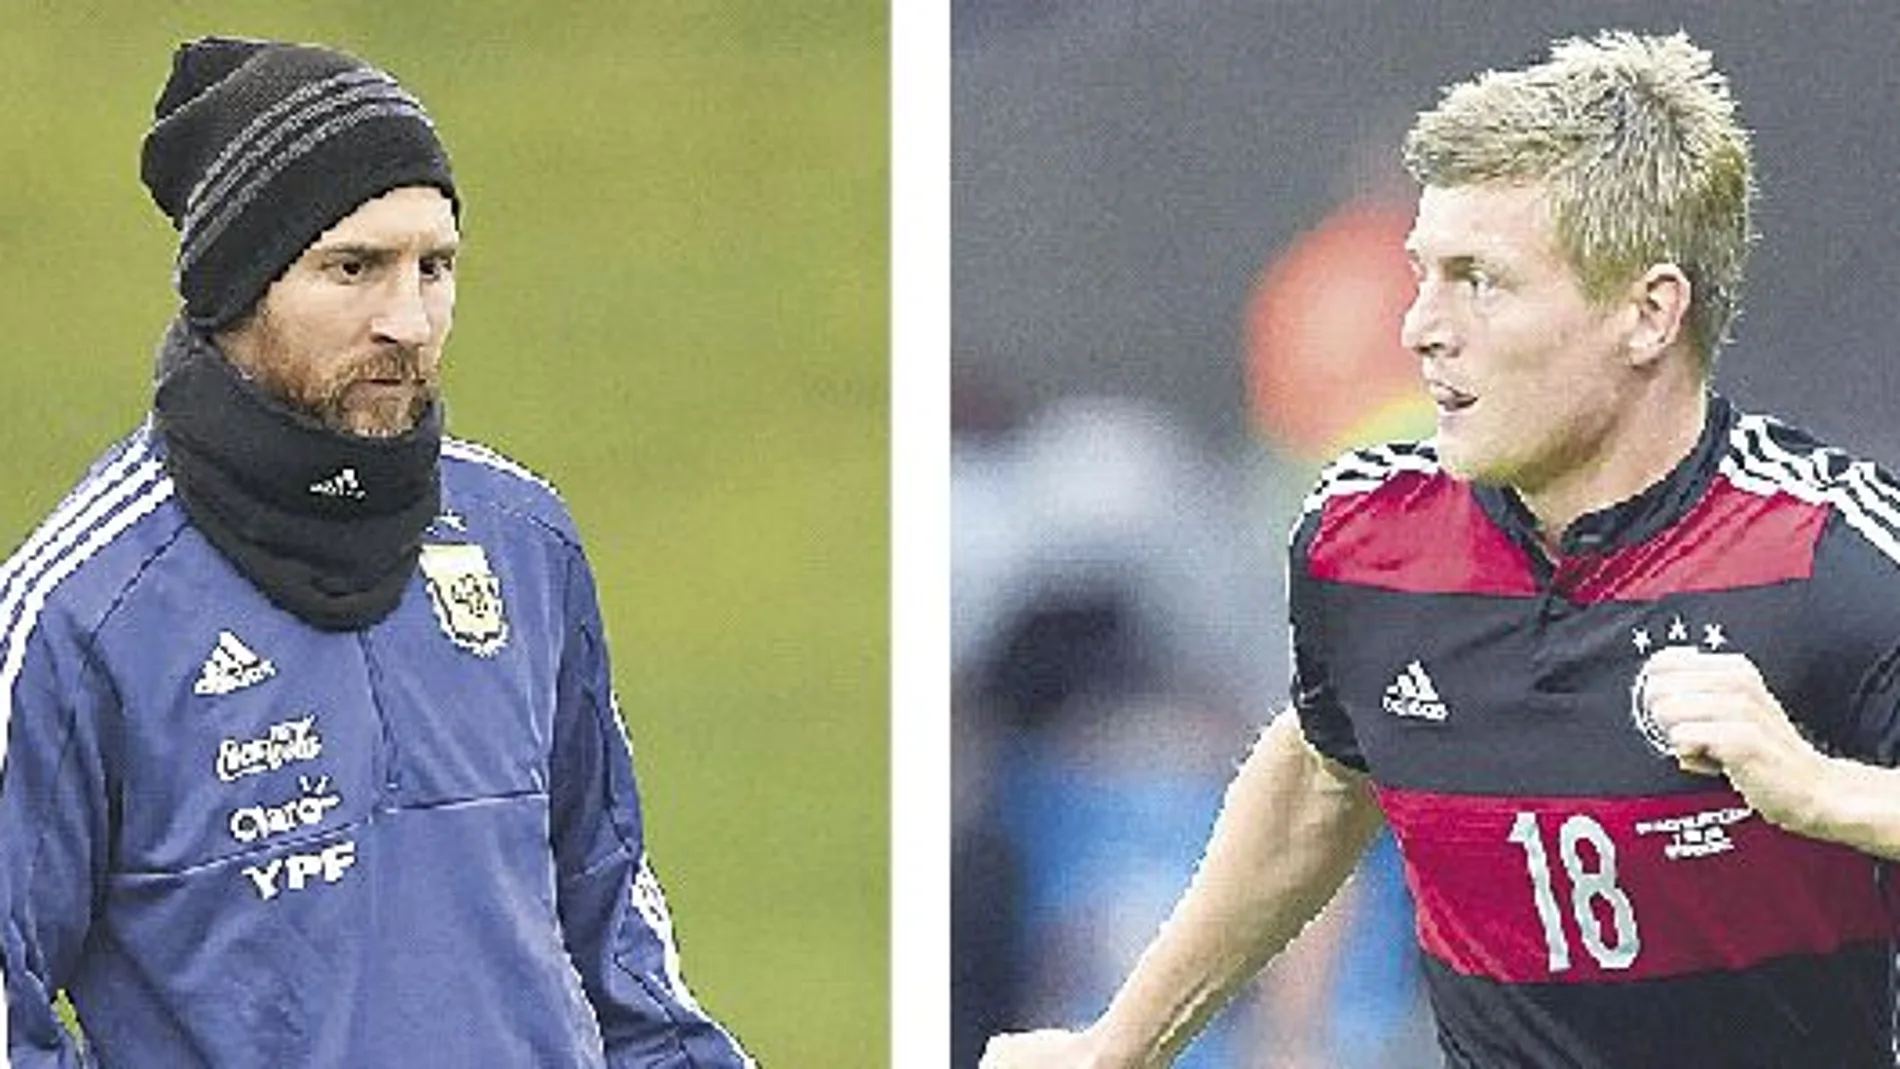 La Argentina de Messi y la Alemania de Toni Kroos son los rivales que ha elegido España para los últimos amistosos de preparación.